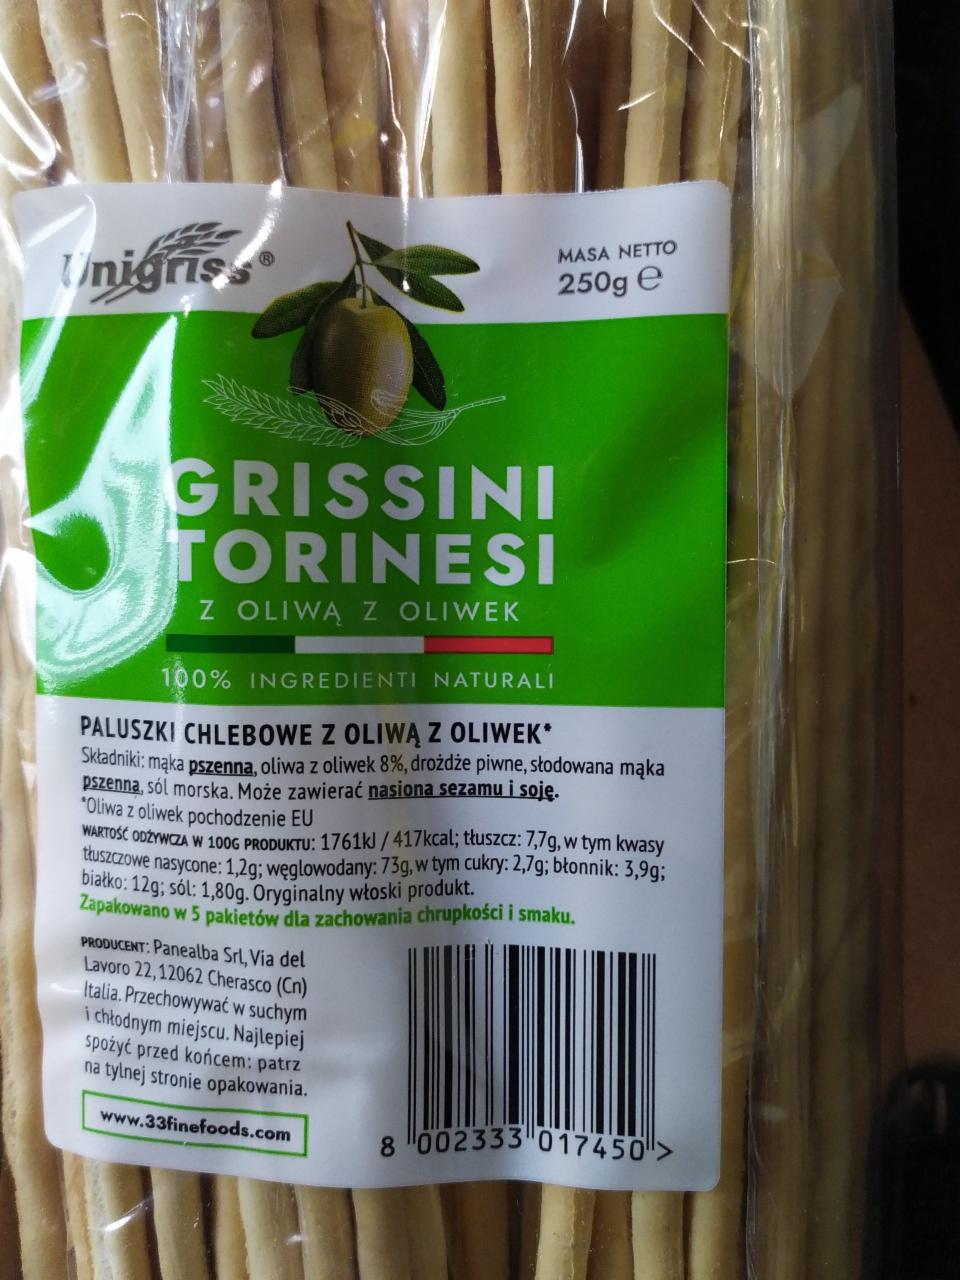 Zdjęcia - Grissini Torinesi z oliwą z oliwek Unigriss